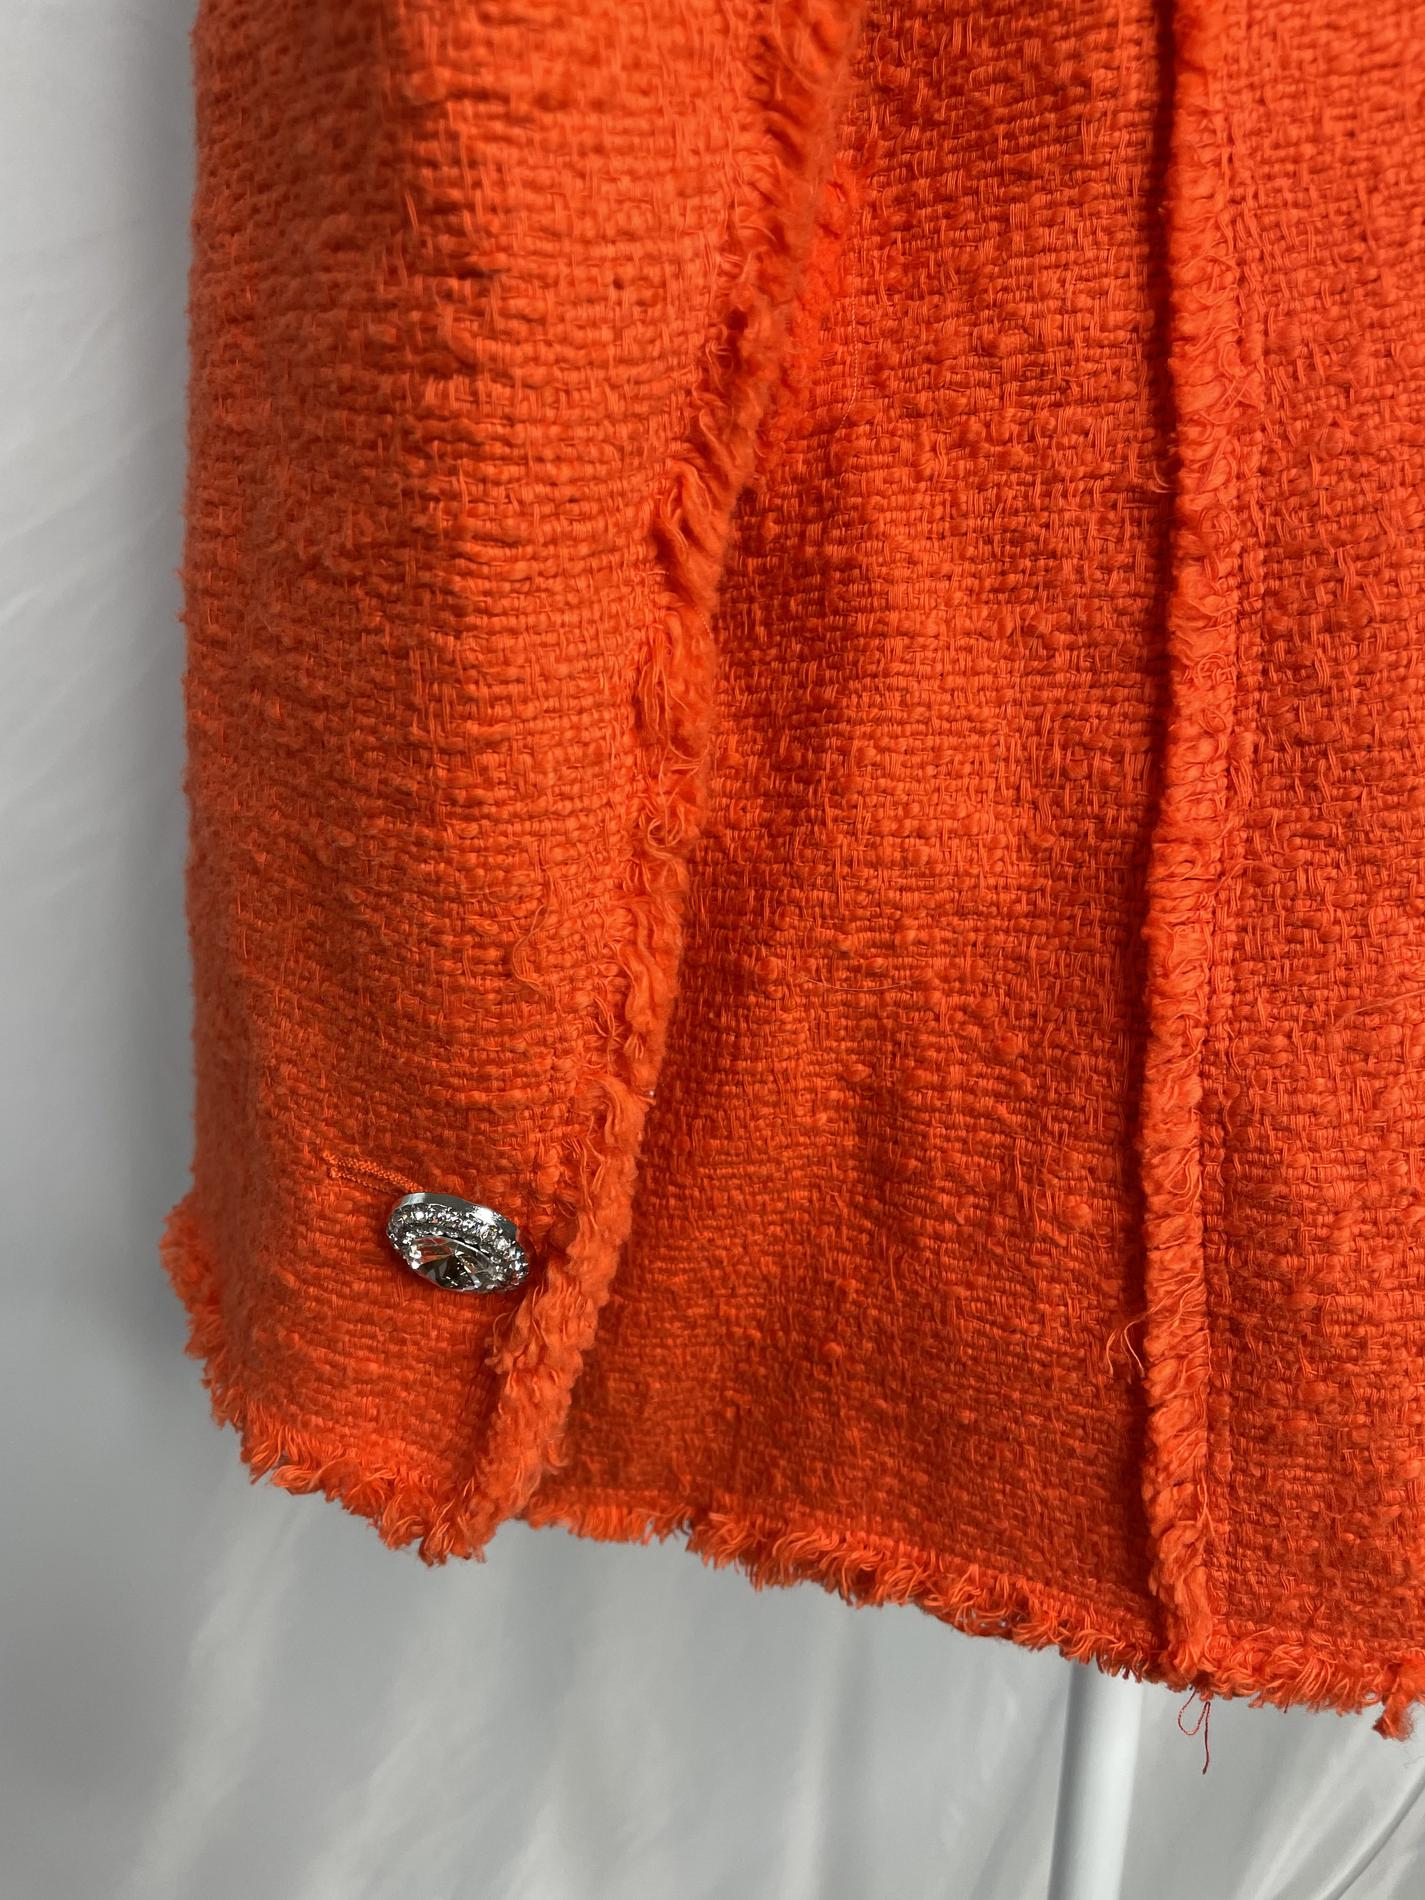 Zara Orange Size 8 Blazer Jumpsuit Dress on Queenly